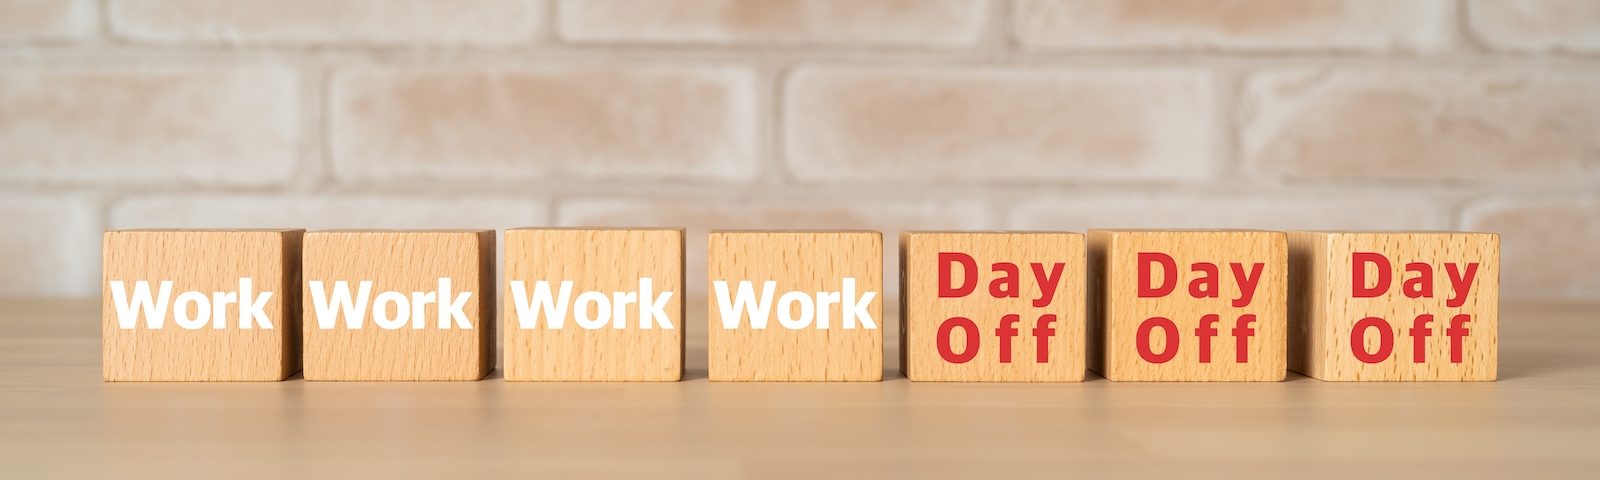 Essais sur la semaine de travail de quatre jours — premiers résultats internationaux !